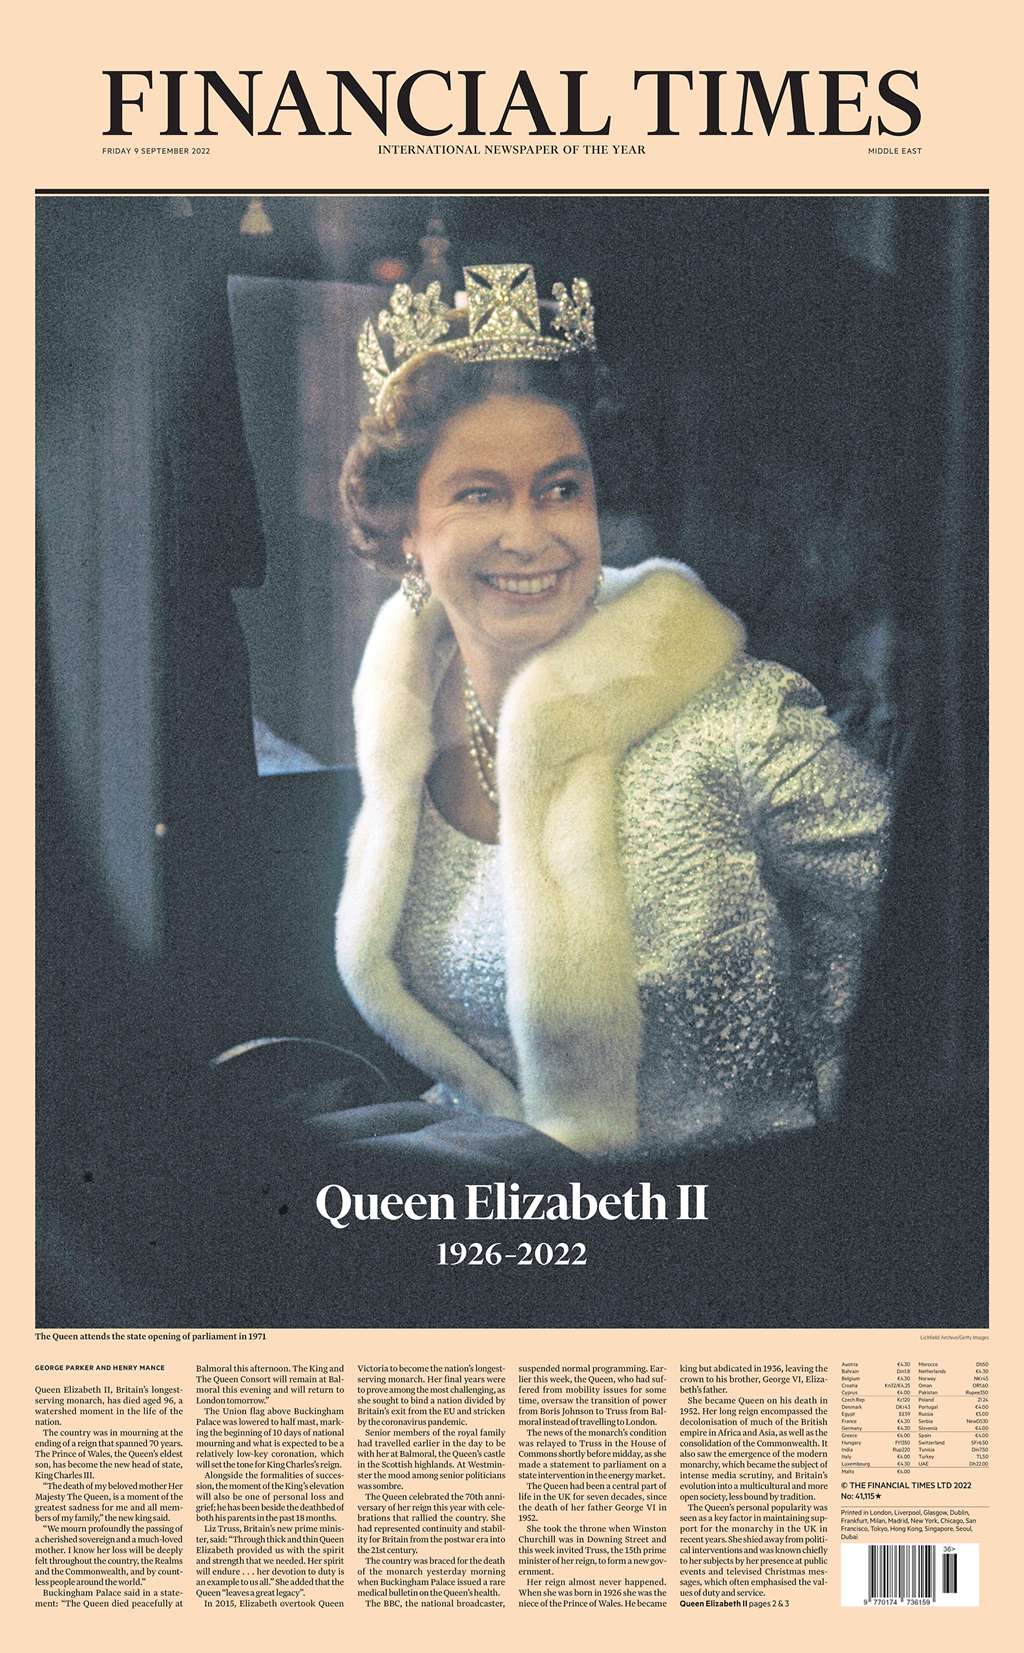 Cobertura imprensa britânica morte rainha Elizabeth II capas primeiras páginas jornal Financial Times 